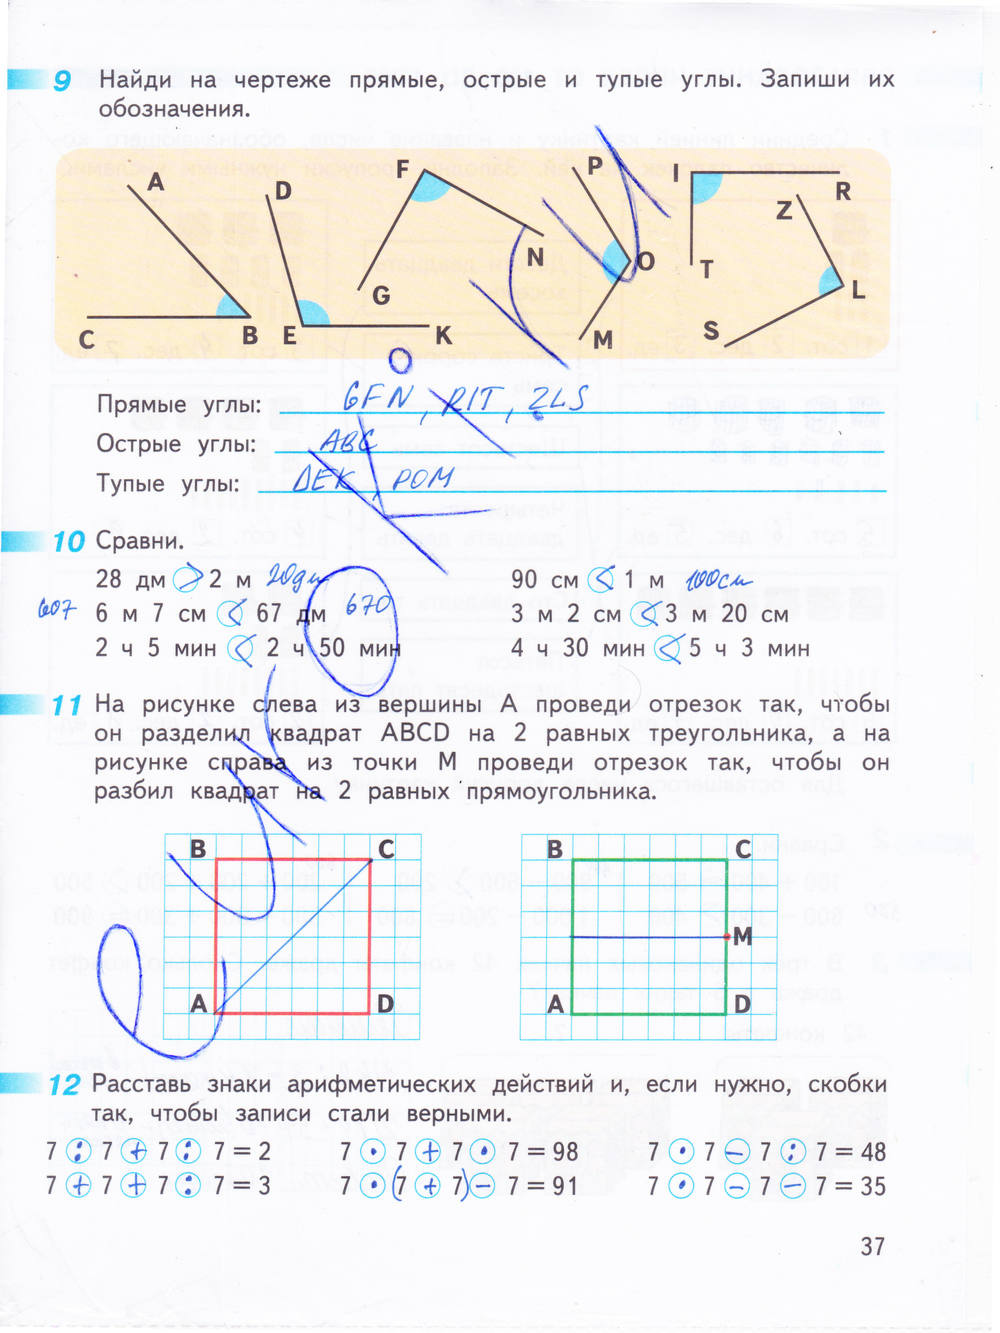 Математика часть 1 страница 37 ответы